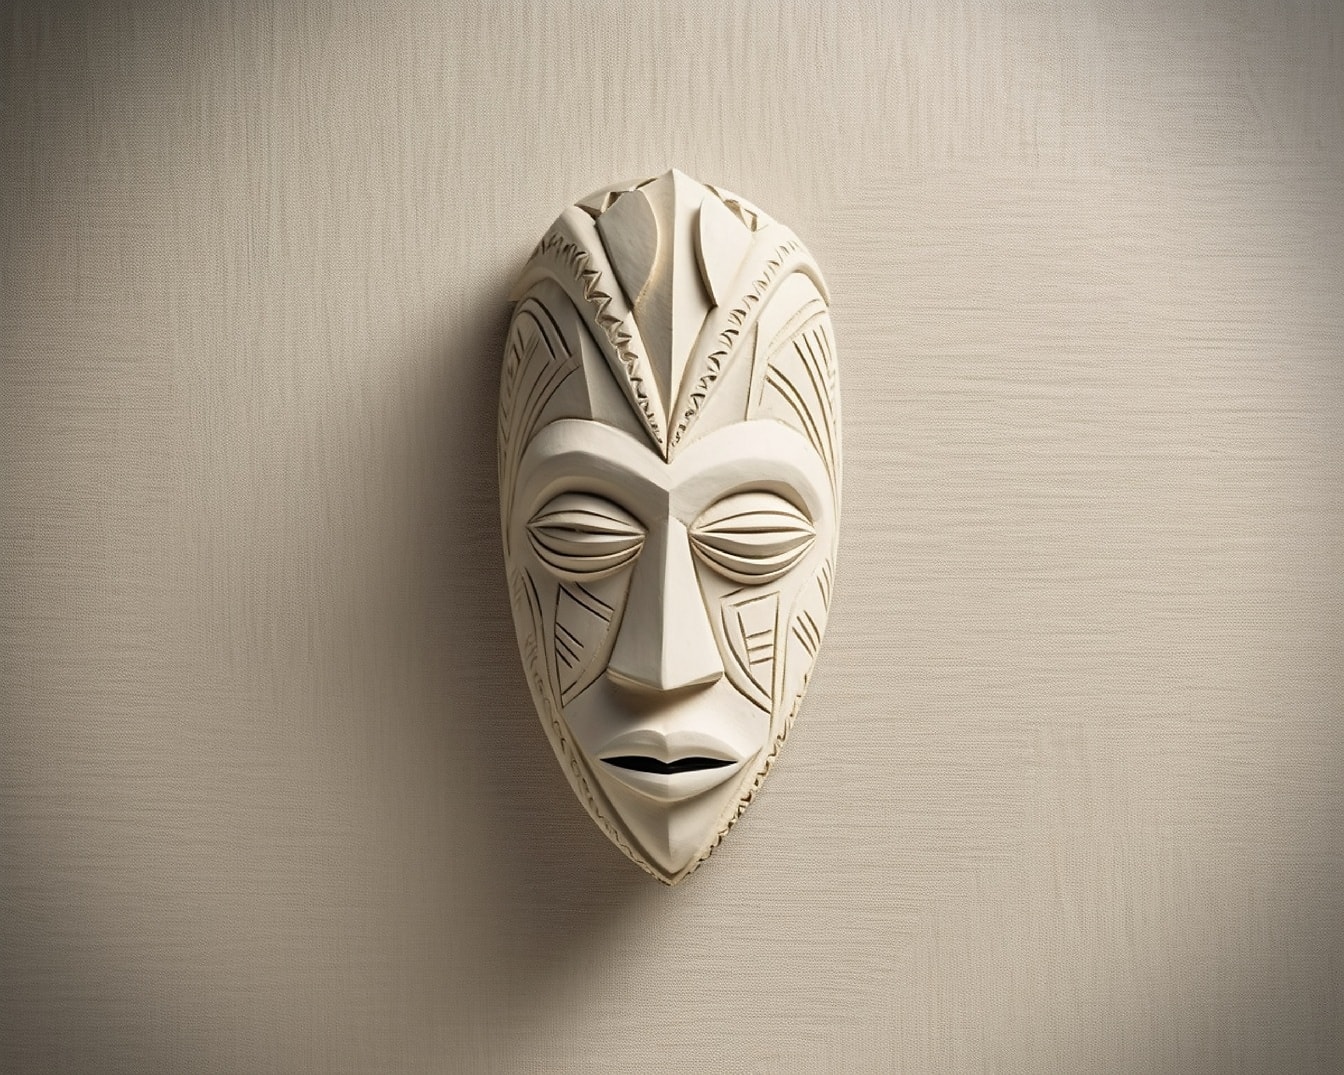 Arte da máscara facial de madeira esculpida feita à mão na parede bege